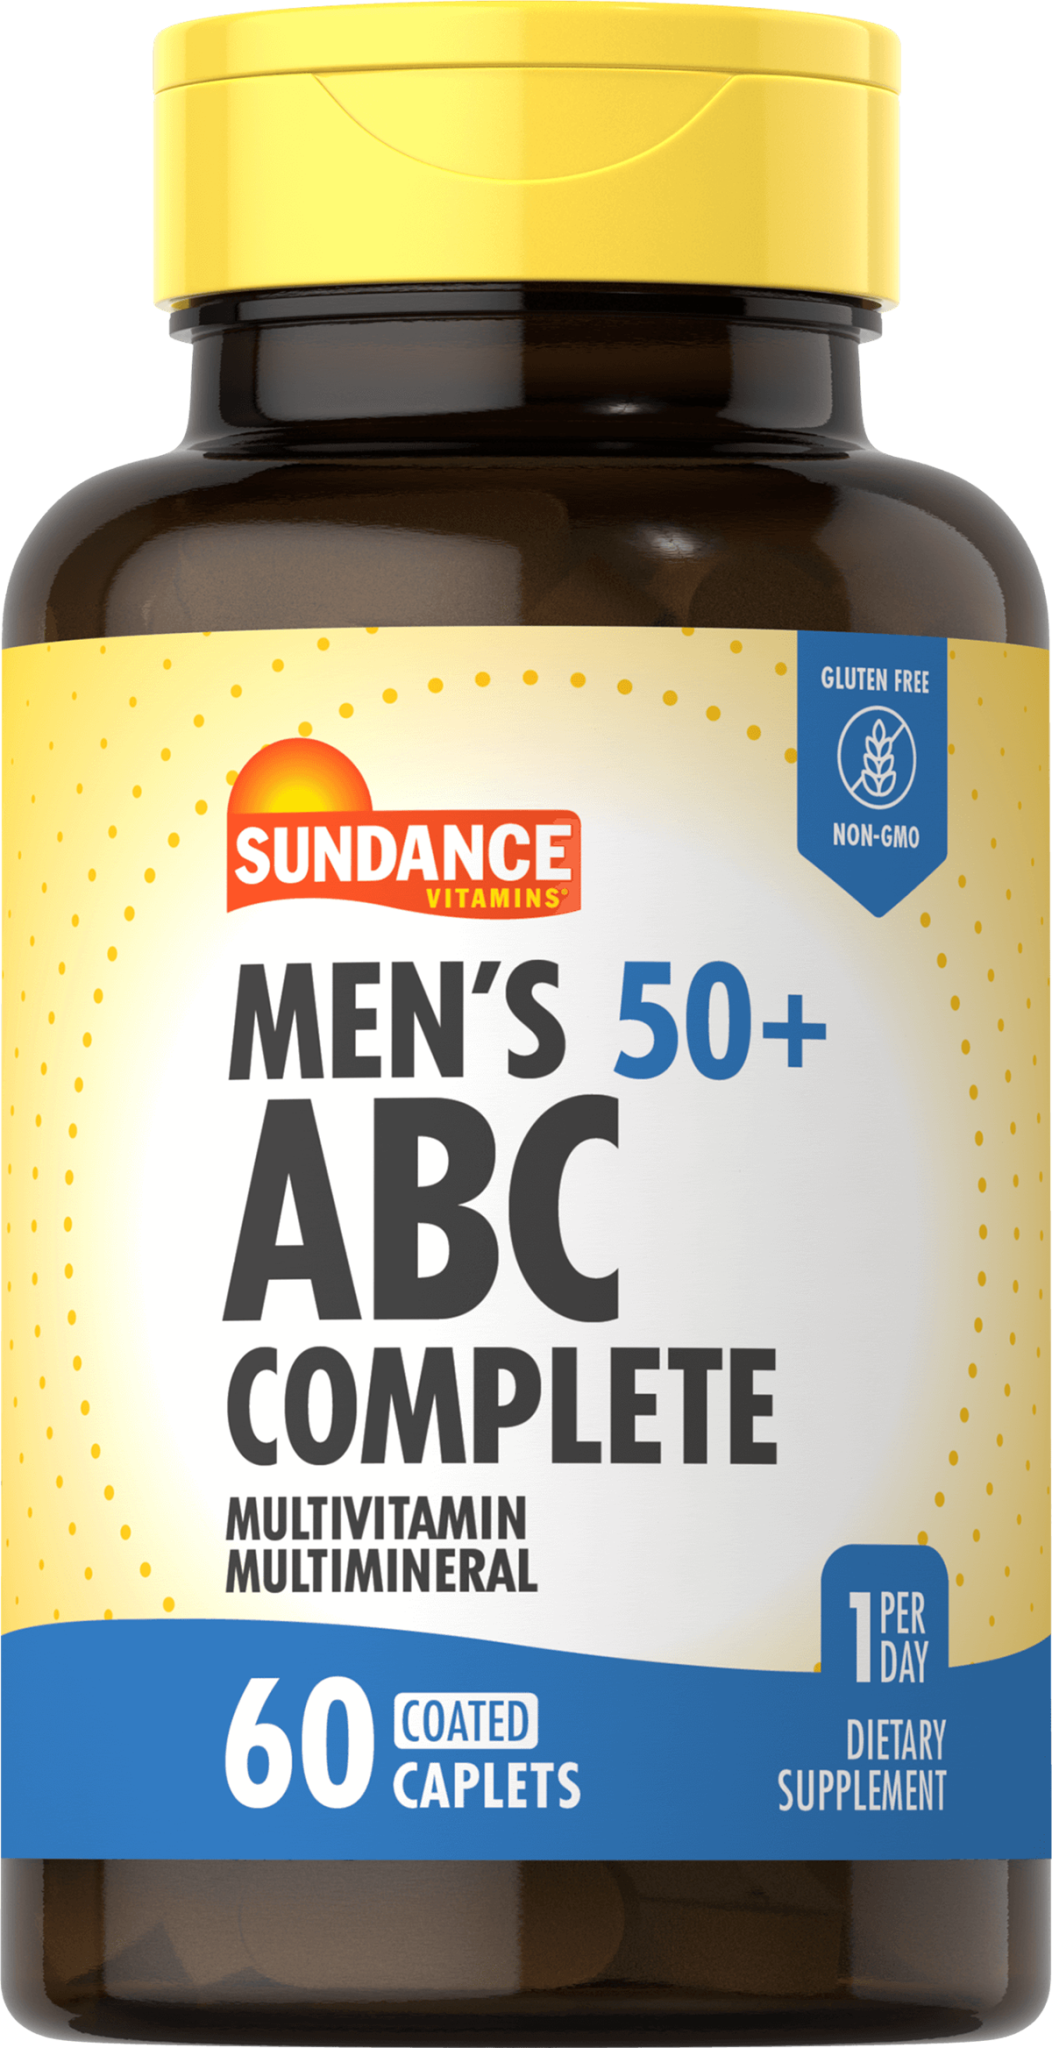 Multivitamin & Mineral for Men 50+